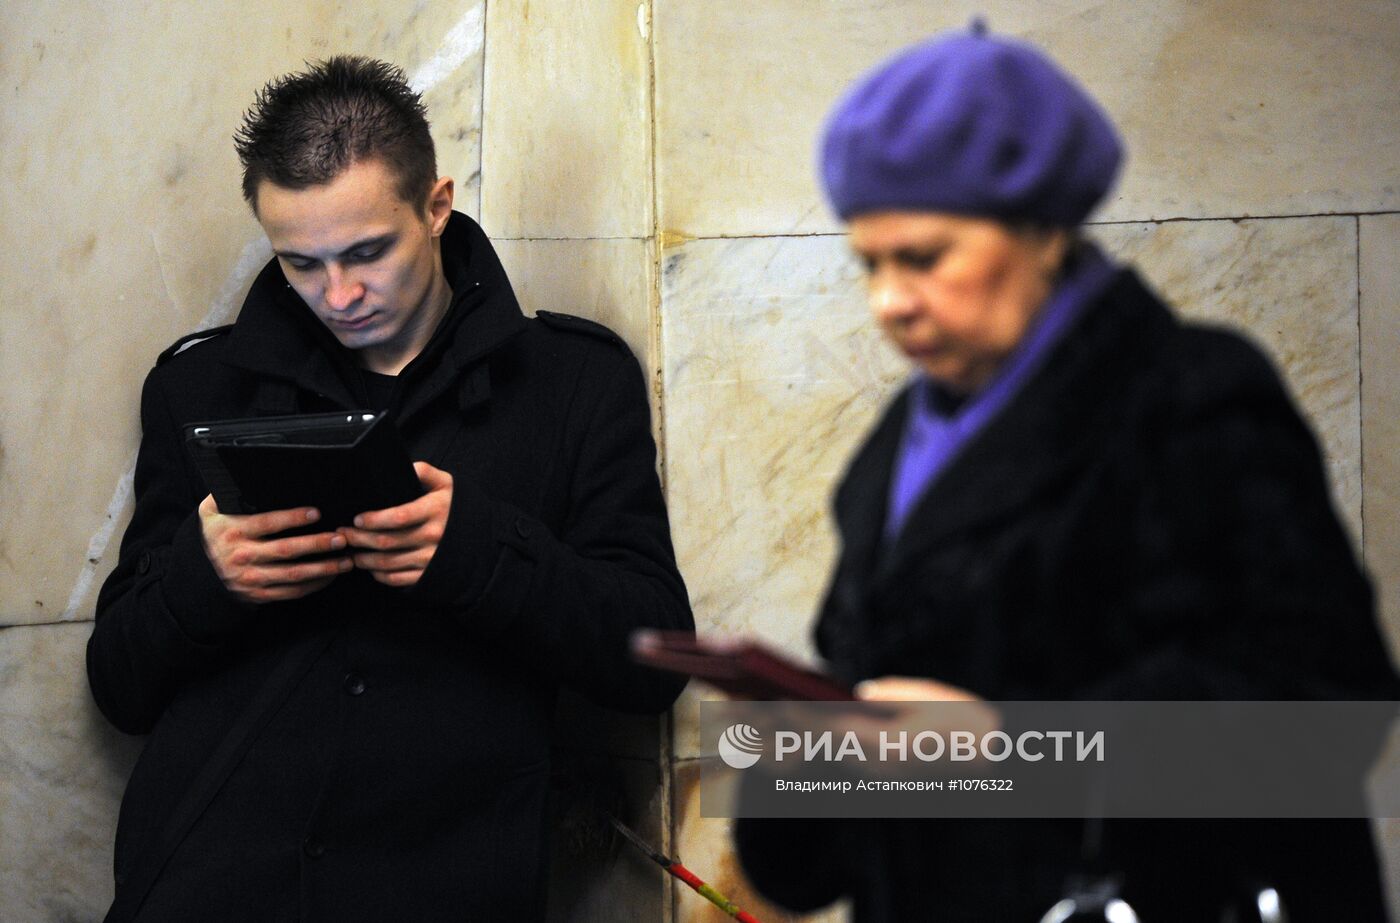 Пассажиры с портативными устройствами в московском метро